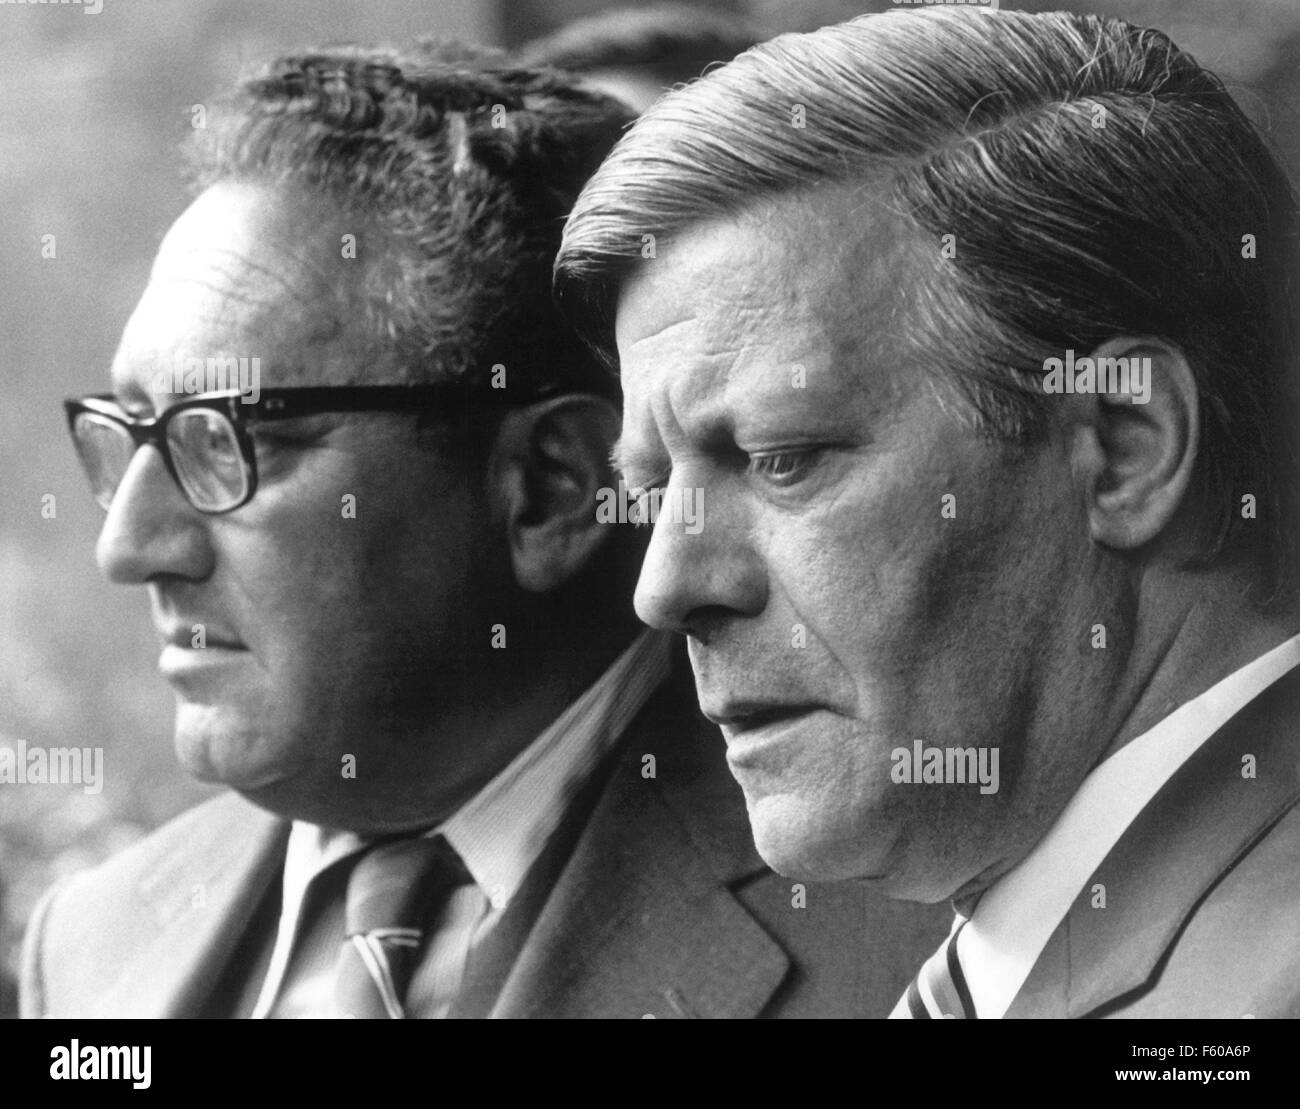 Deutsche Kanzlerin Helmut Schmidt (r) und US-Außenminister Henry Kissinger (l) geben eine Aussage über die Welthandelskonferenz in Nairobi auf der 23. Mai 1976 in Bonn. Stockfoto